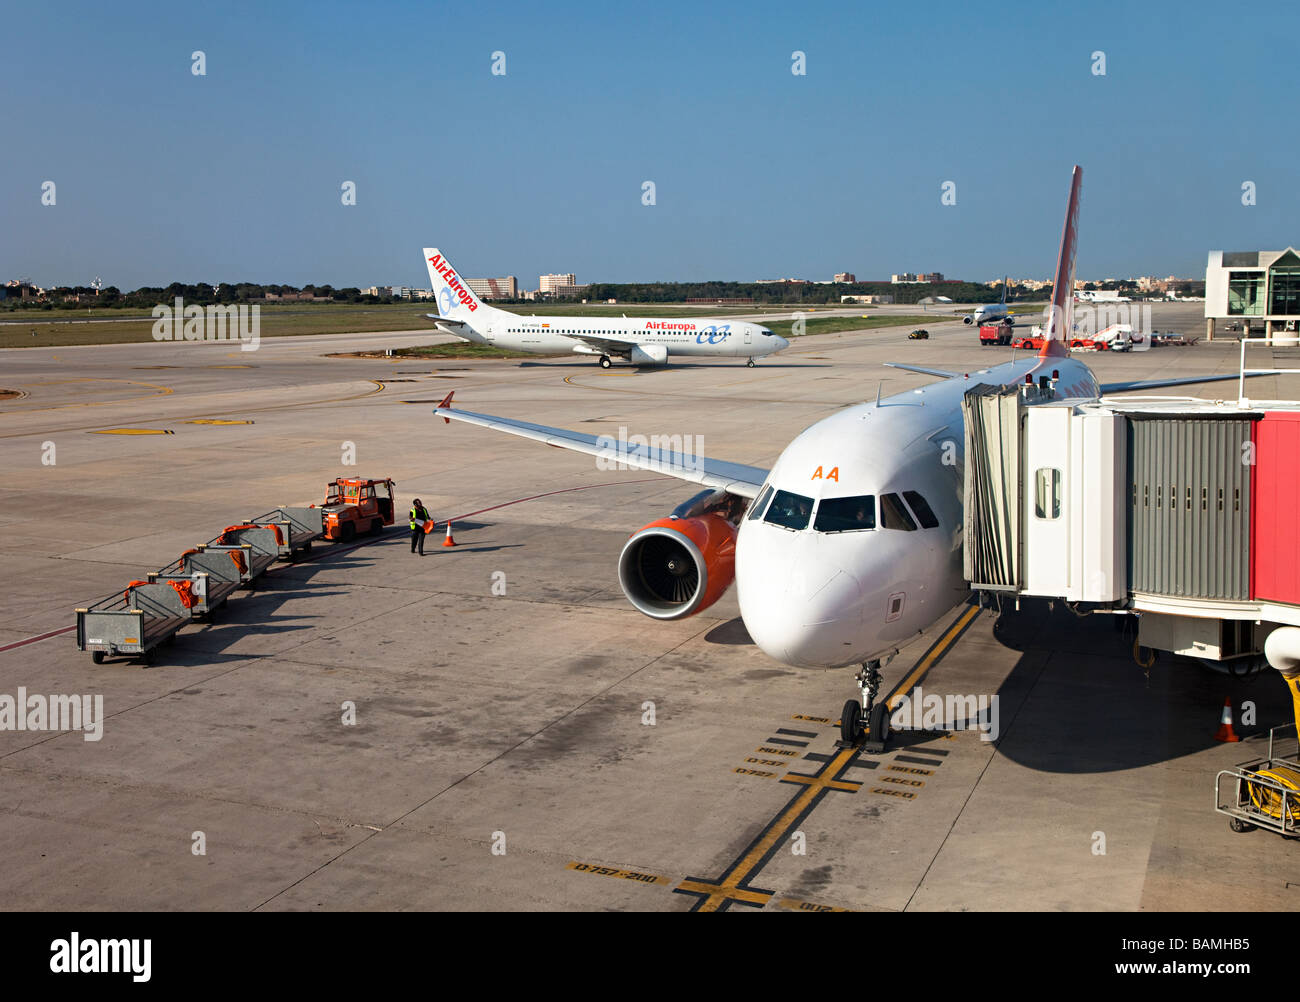 Aeromobili Easyjet al terminale con equipaggio a terra di presenze dall'aeroporto di Palma Mallorca Spagna Spain Foto Stock